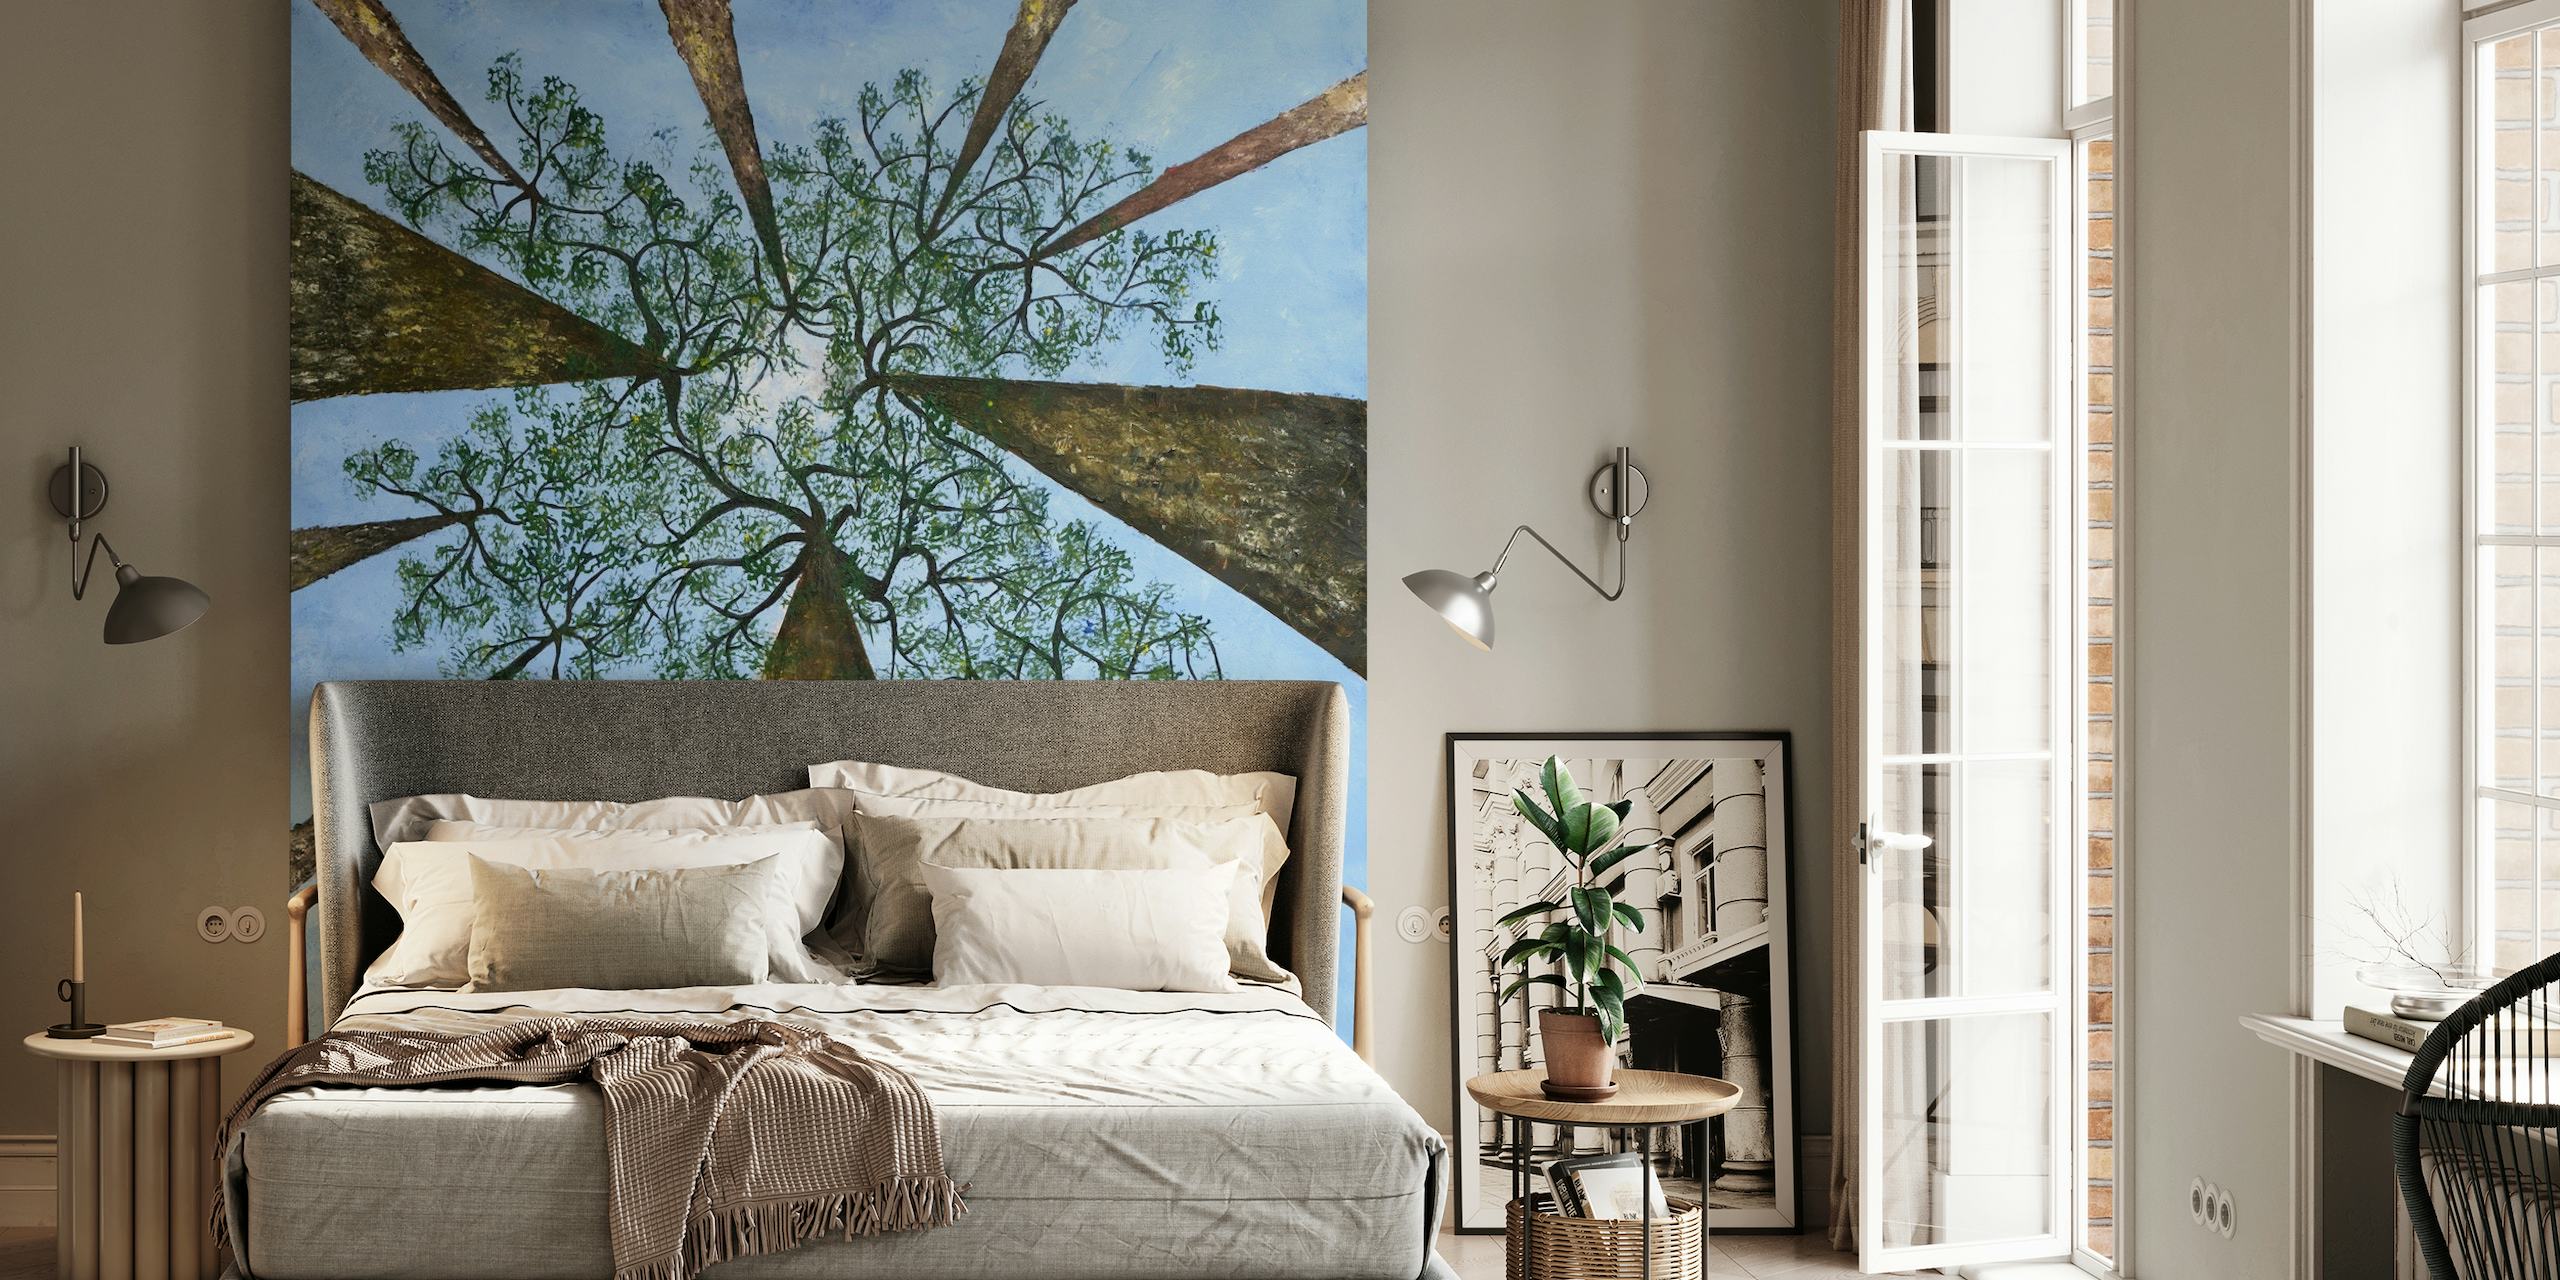 Et vægmaleri af høje træer set fra bunden, der viser konvergens af stammer og en baldakin af grønne blade mod en blå himmel.